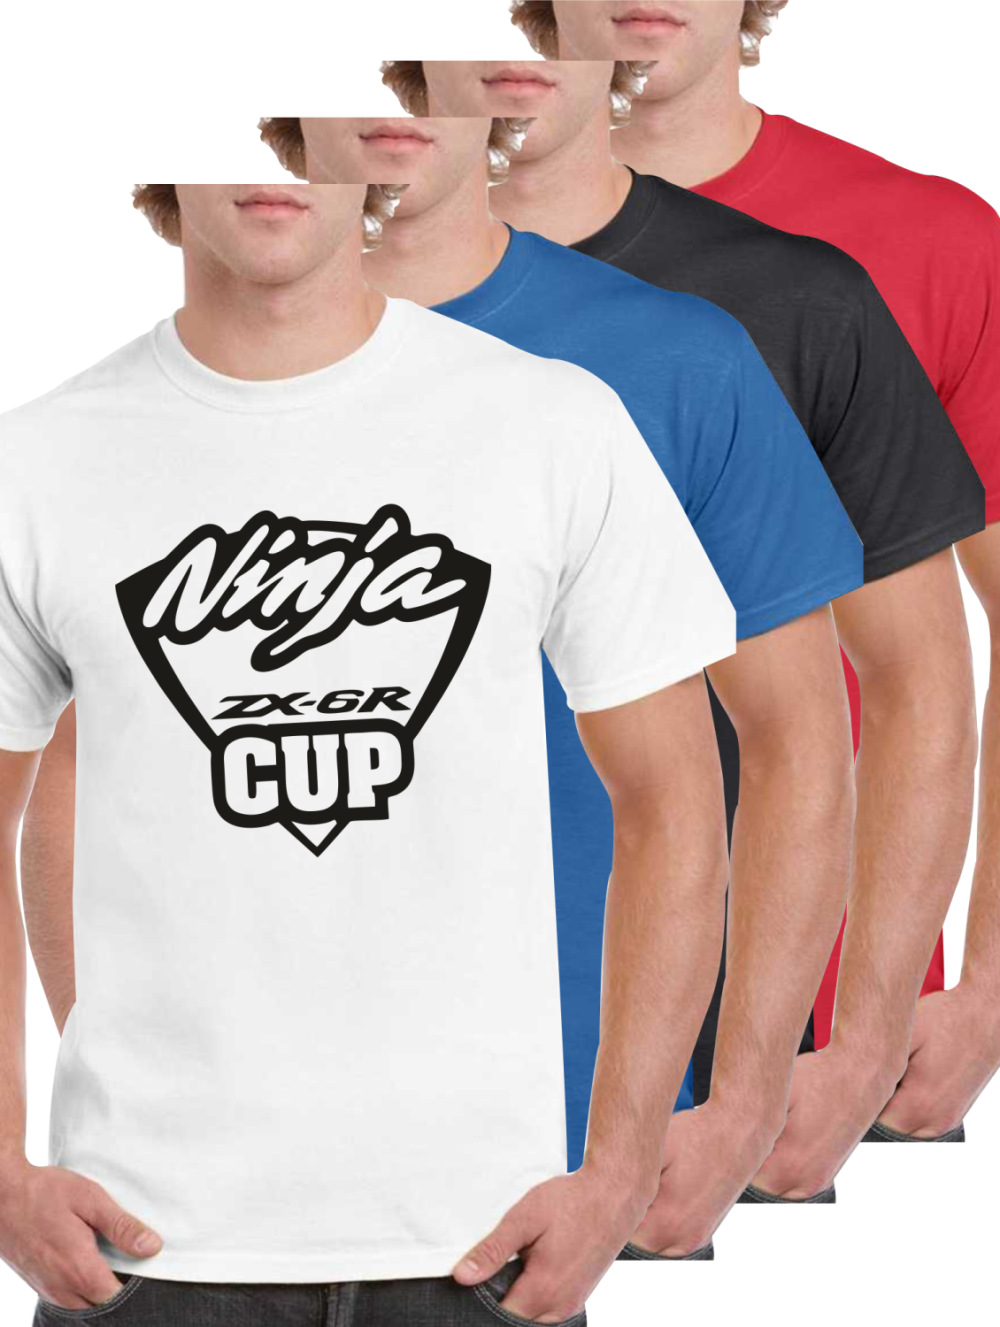 colores ninja zx6r cup